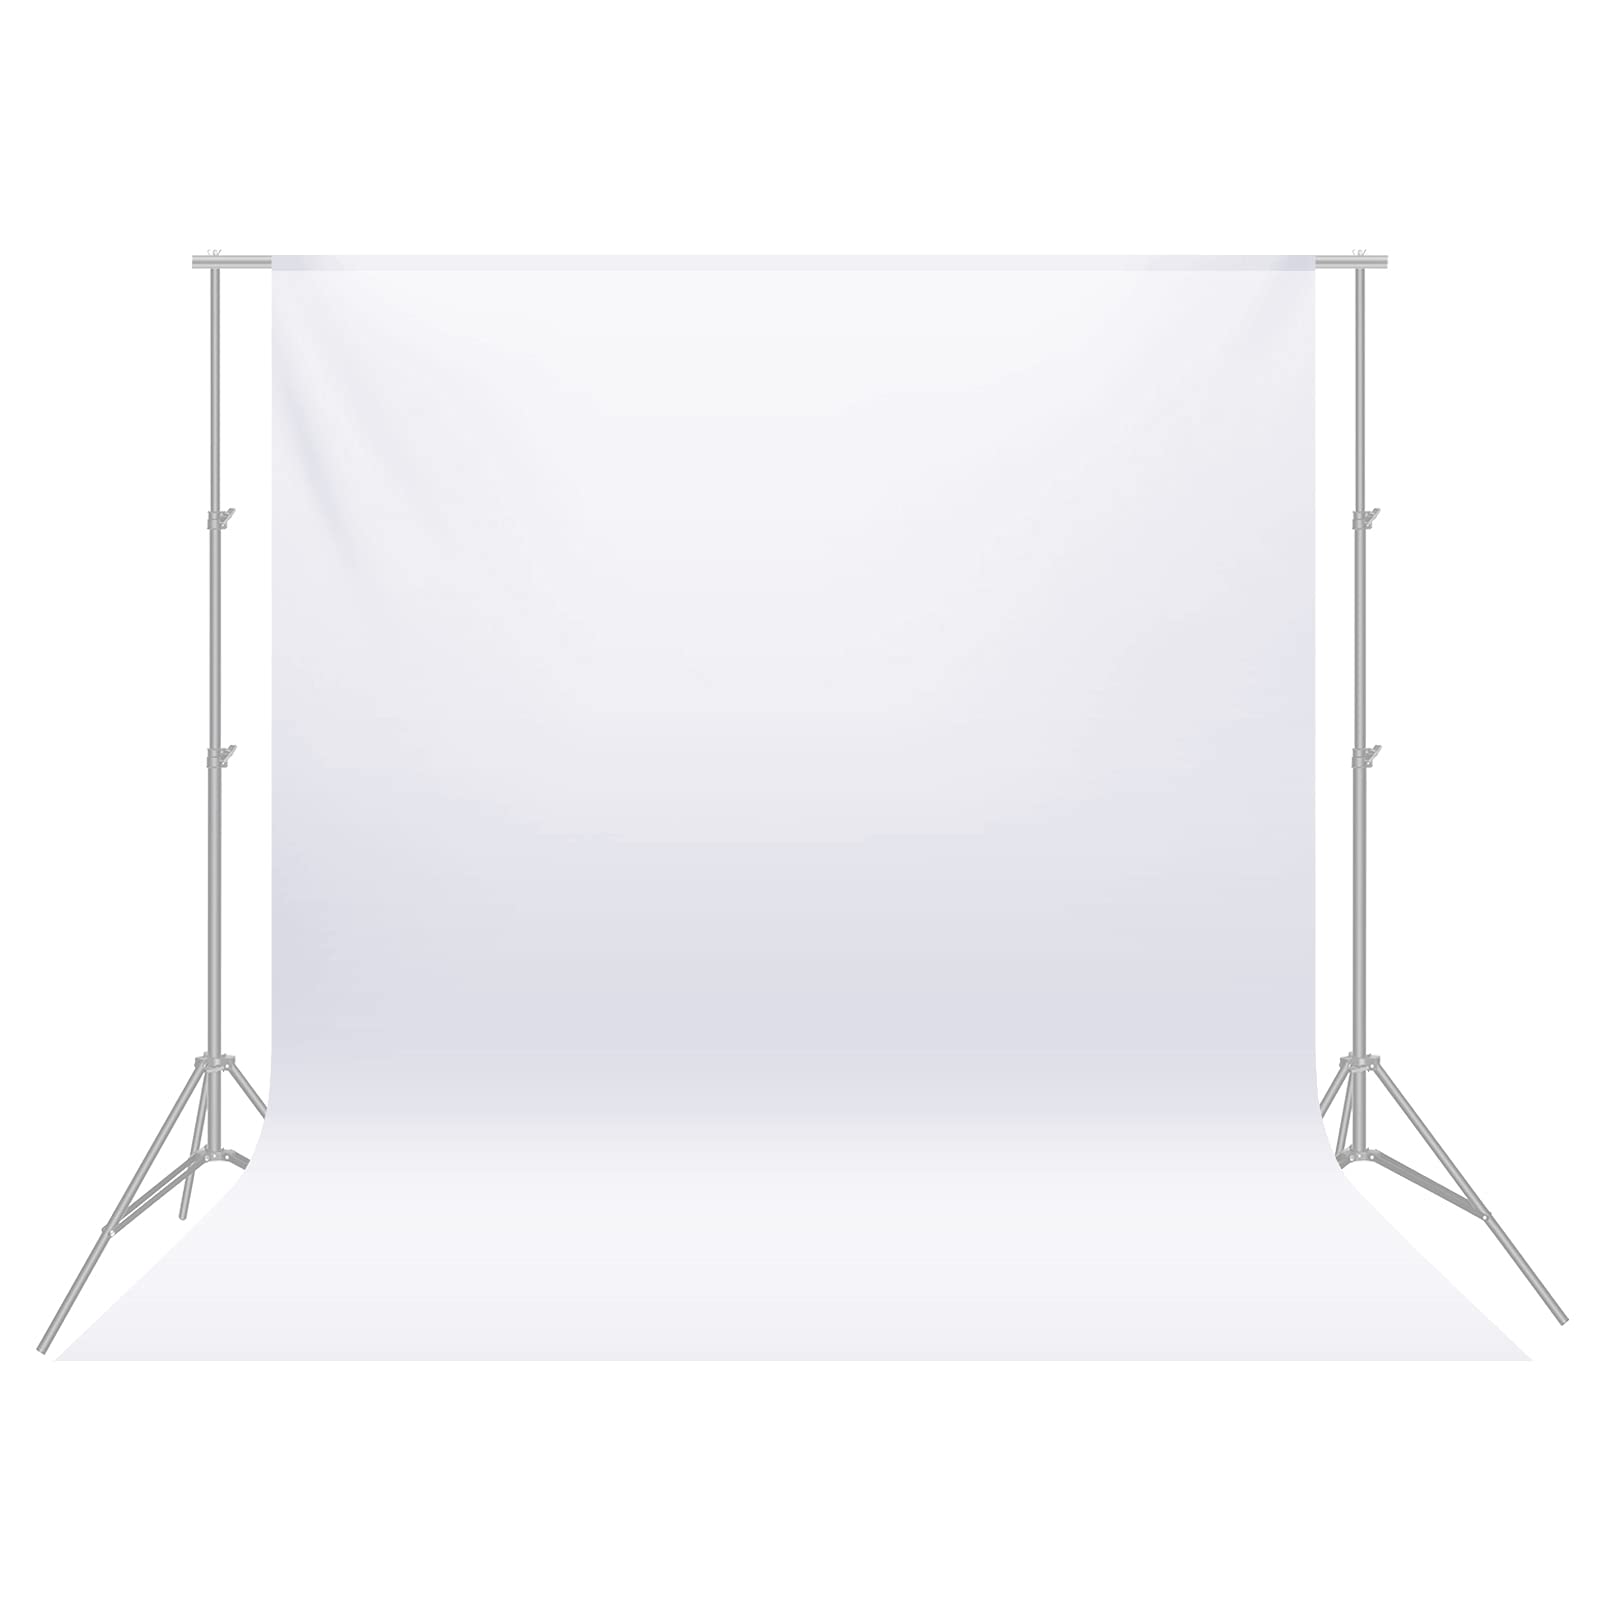 Mua nền chụp ảnh Neewer 9 x 13 feet/2.8 x 4 meters trắng trên nền trắng đem lại cho bạn sự chuyên nghiệp và tuyệt với cho các bức ảnh chụp sản phẩm hoặc chụp ảnh sản phẩm. Hãy nhanh chóng tới và xem hình ảnh đầy tiềm năng này nhé!